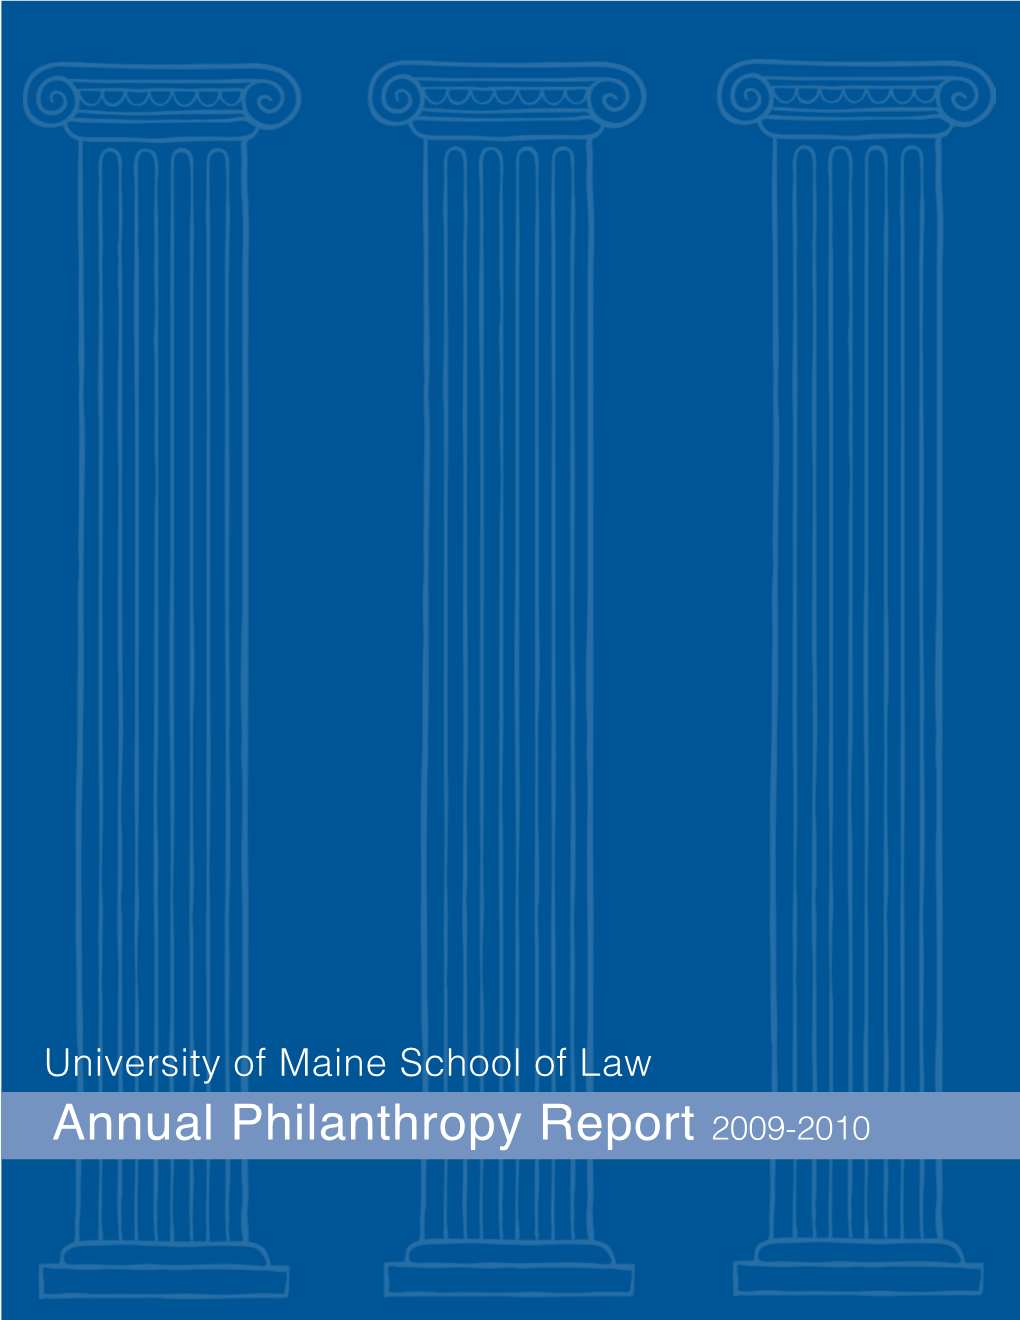 Annual Philanthropy Report 2009-2010